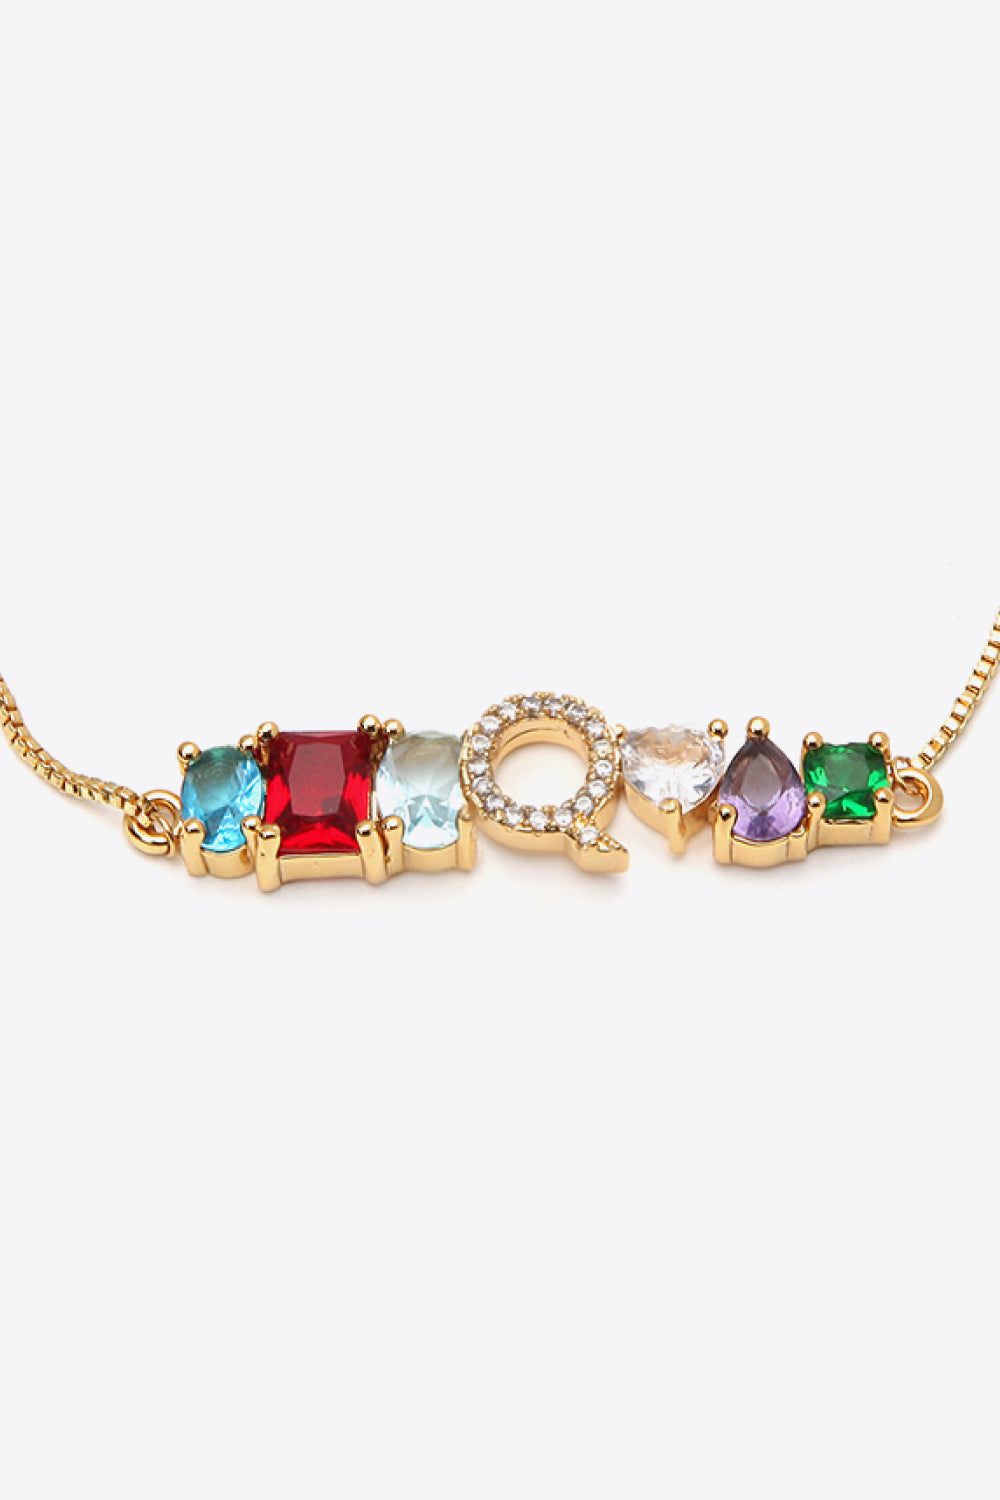 K to T Zircon Bracelet - Women’s Jewelry - Bracelets - 21 - 2024